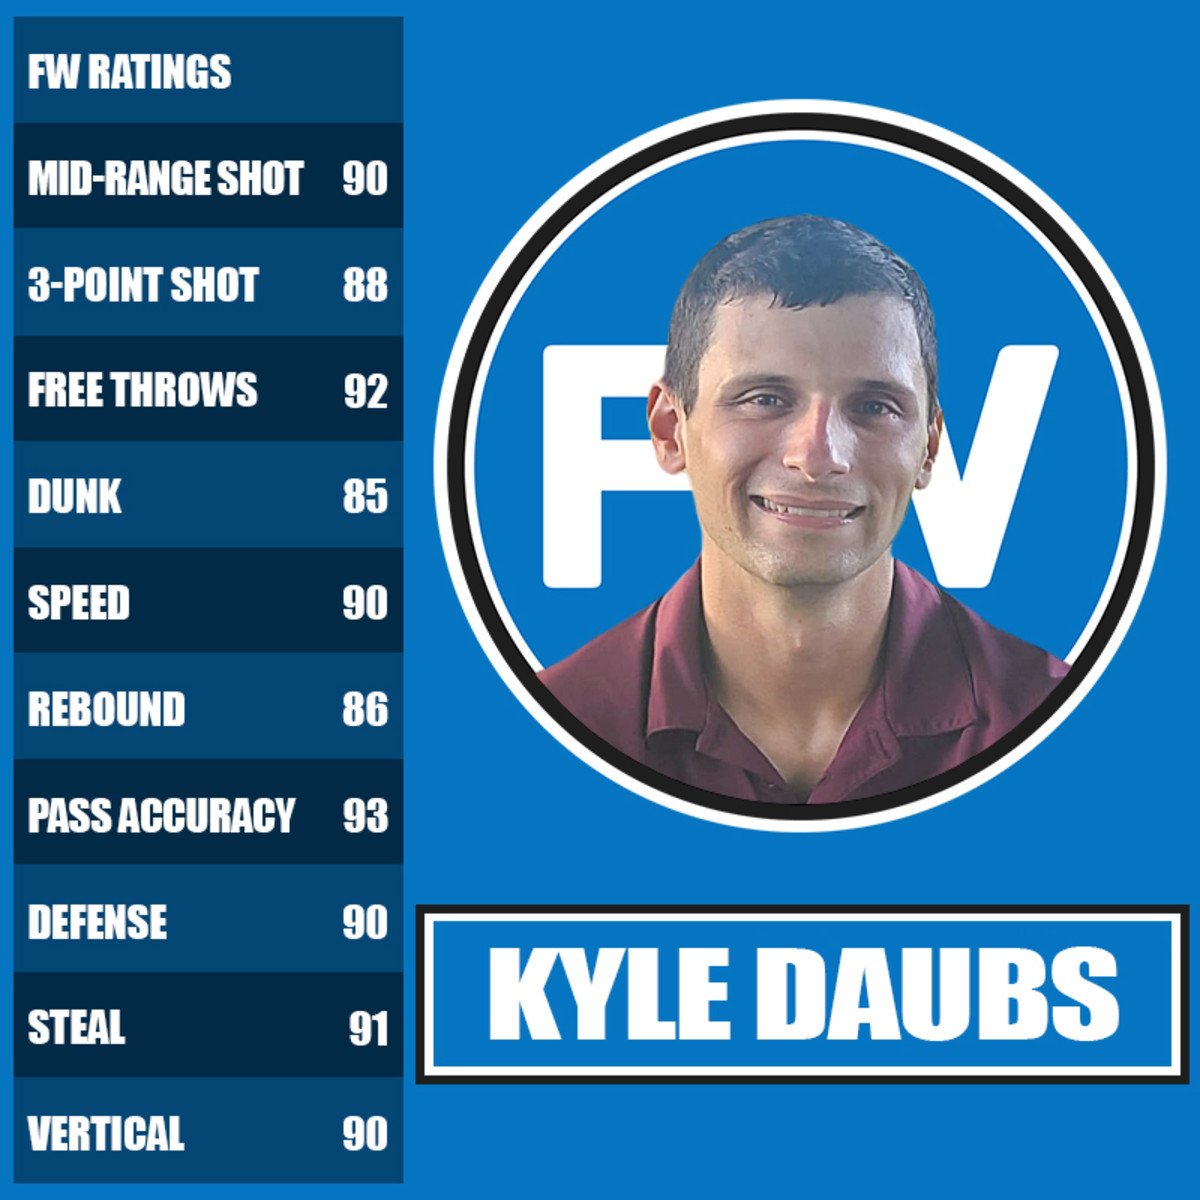 Kyle Daubs